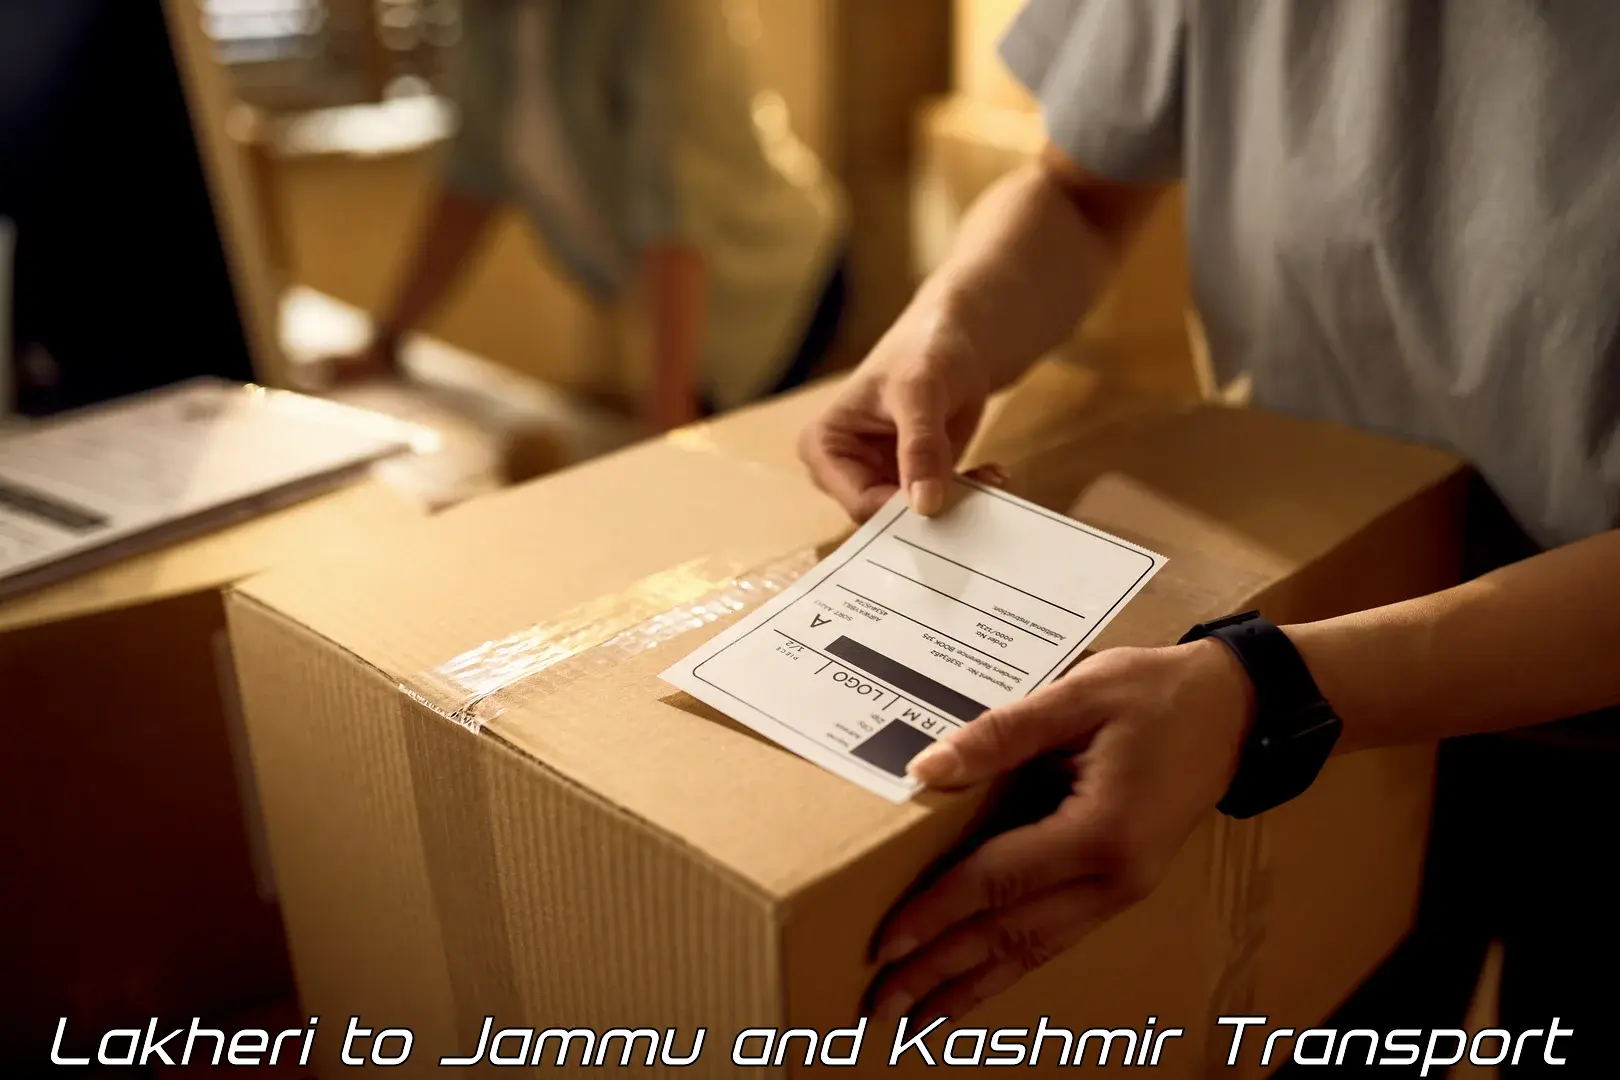 Goods delivery service Lakheri to Kargil